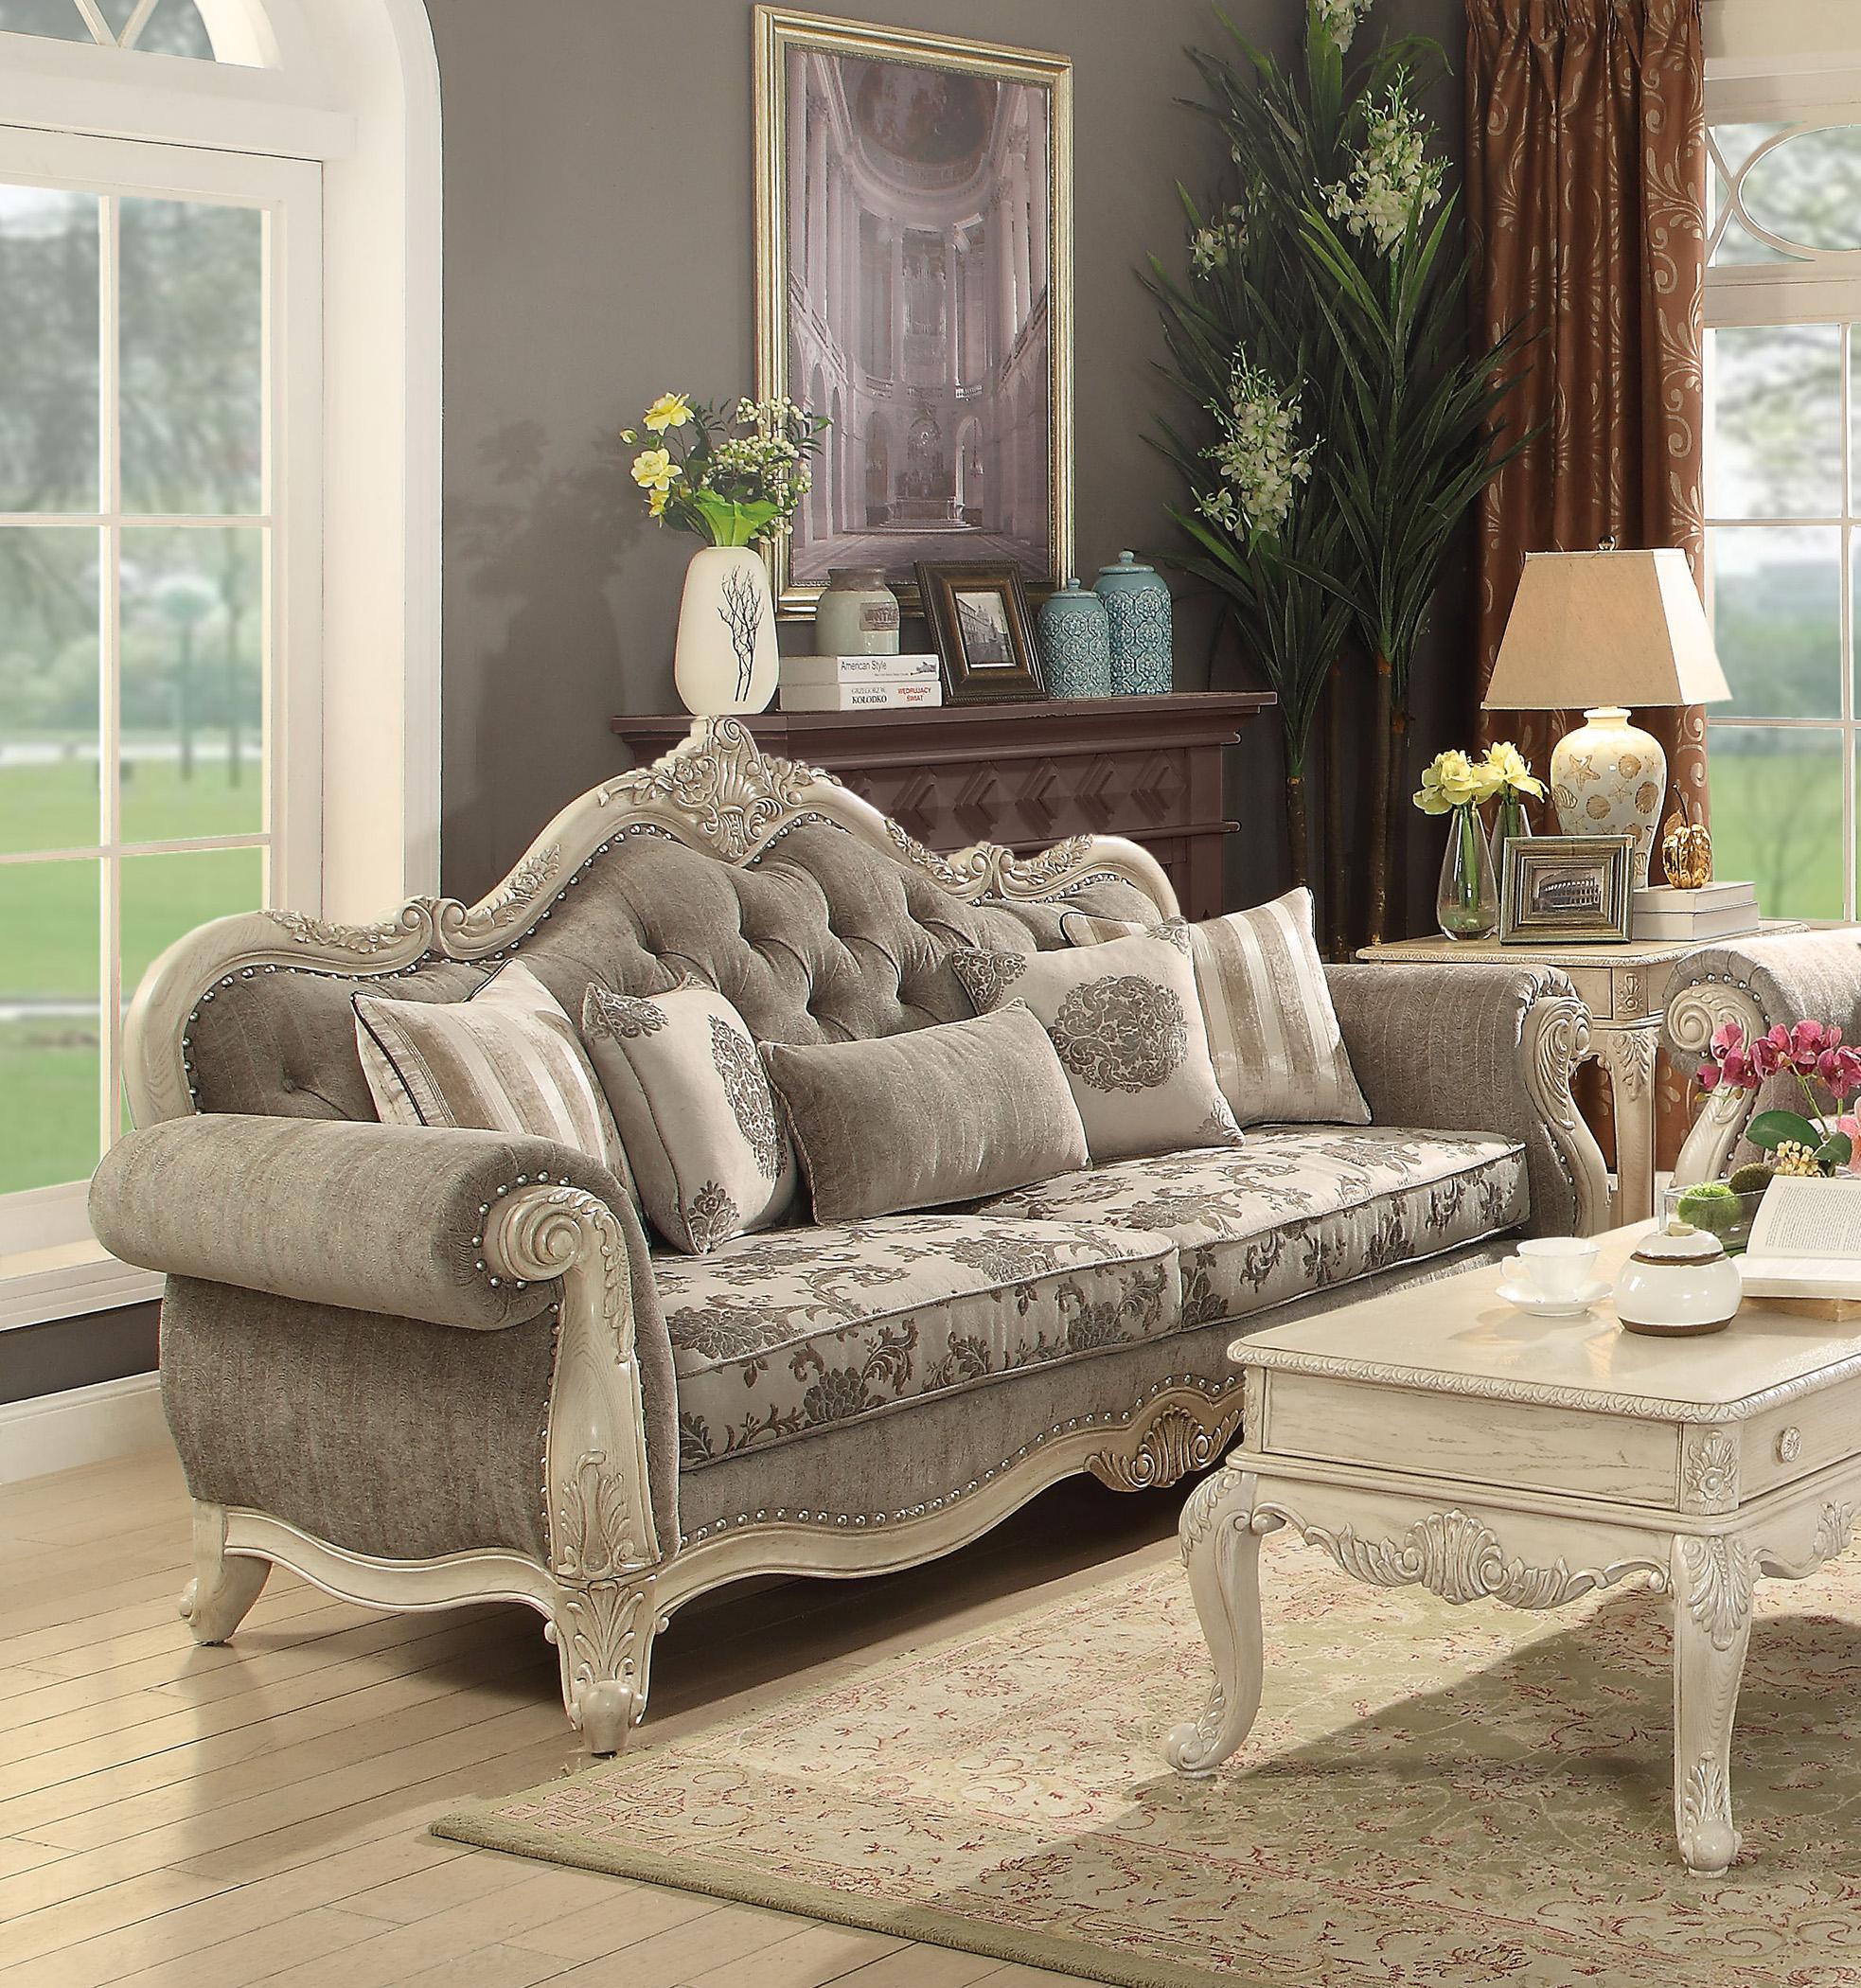 

        
Acme Furniture Ragenardus-WH-56020 Sofa Loveseat Antique White/Gray Fabric 0840412135781
